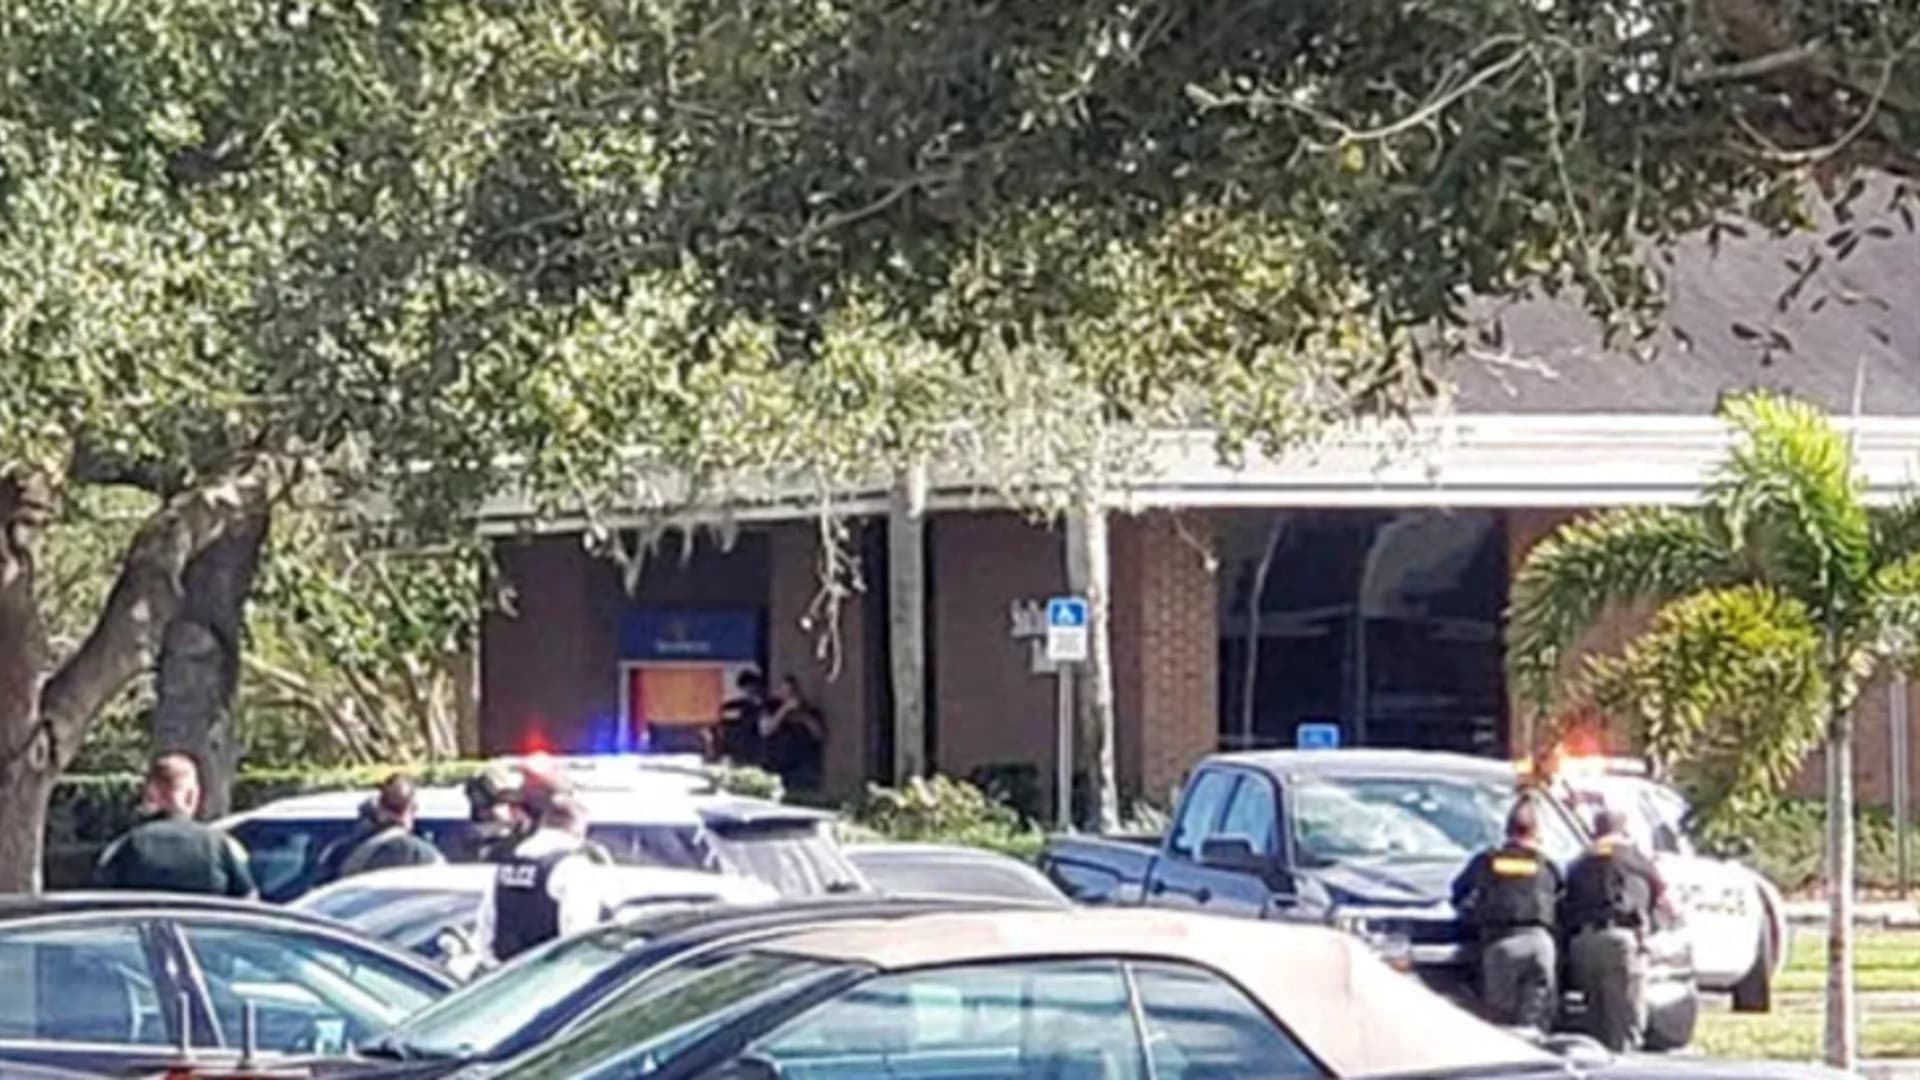 Police: 5 fatally shot inside Florida bank, suspect arrested